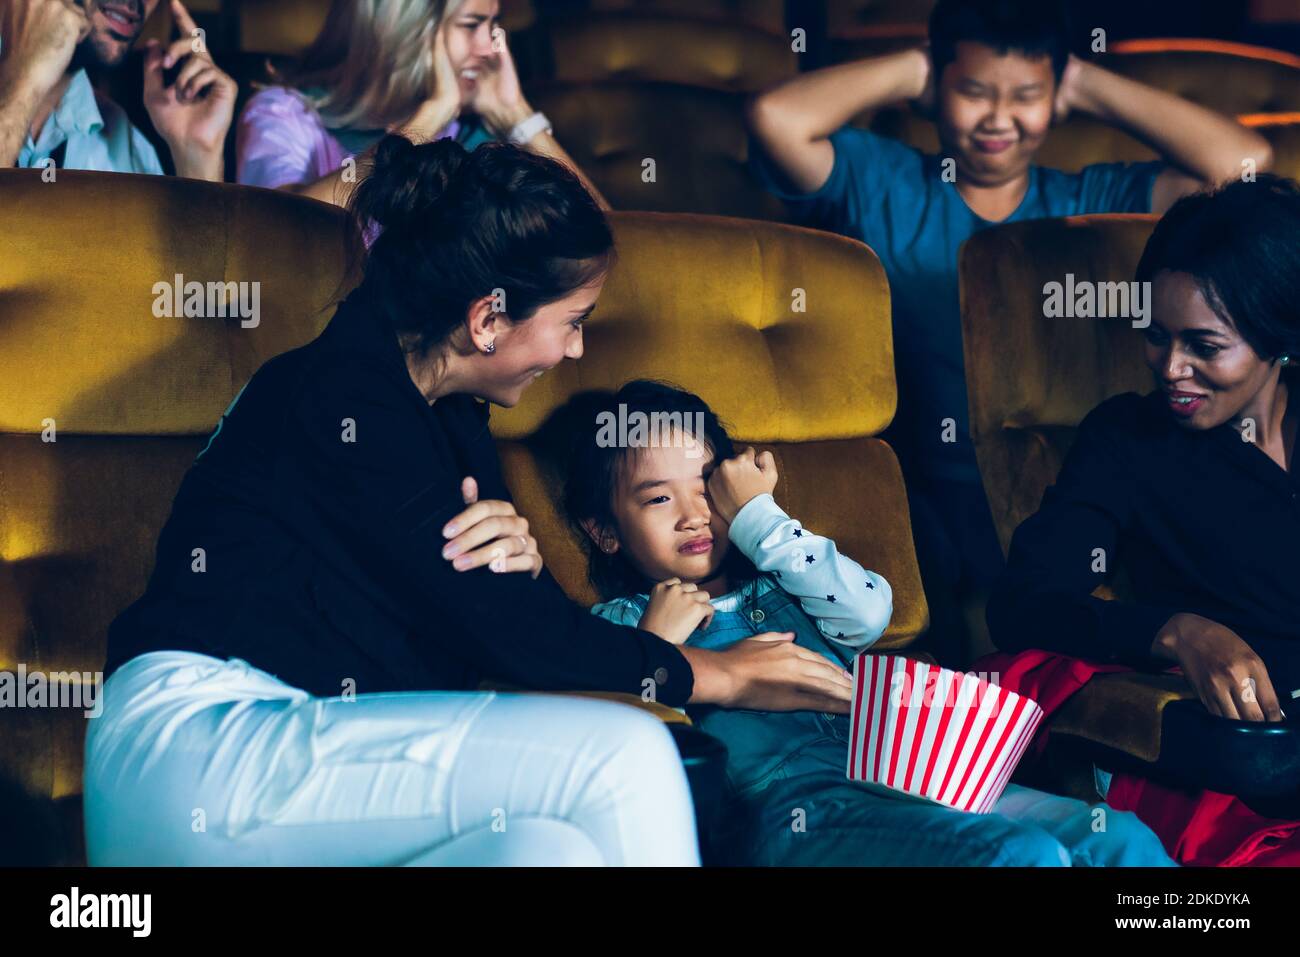 Le ragazze gridavano forte nel cinema, causando fastidio alle persone che siedono accanto e dietro di loro. Foto Stock